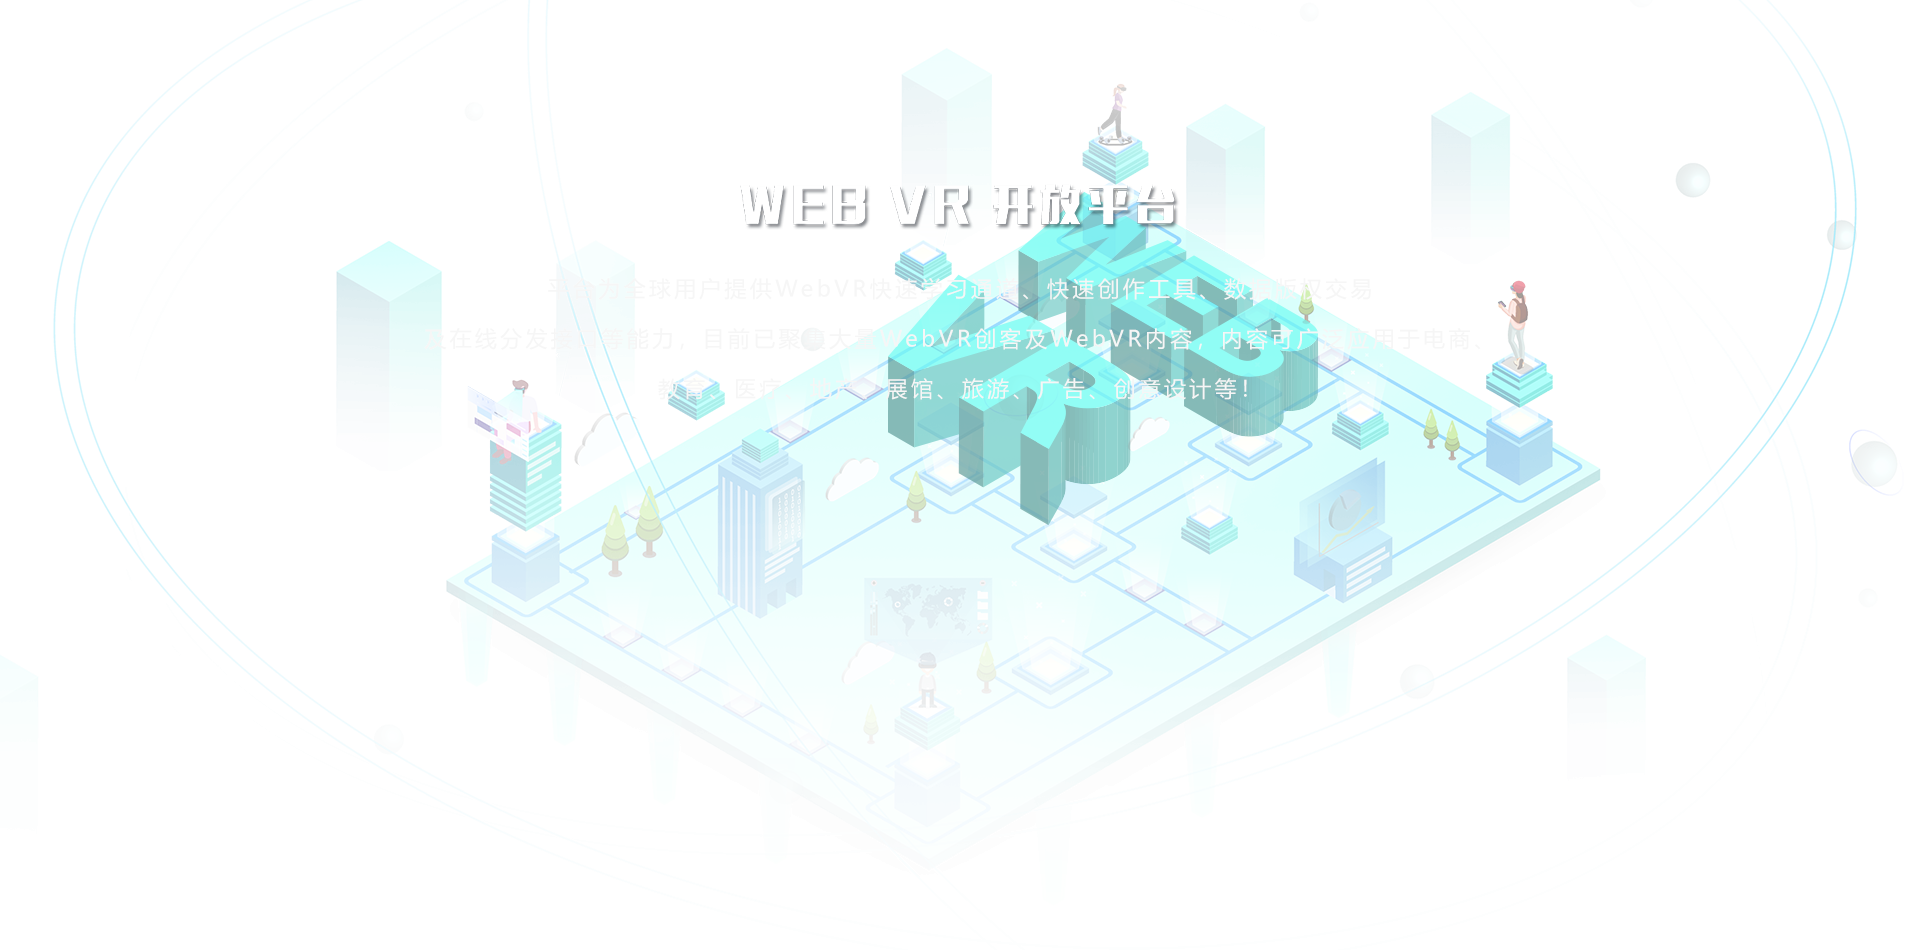 WEB VR 开放平台